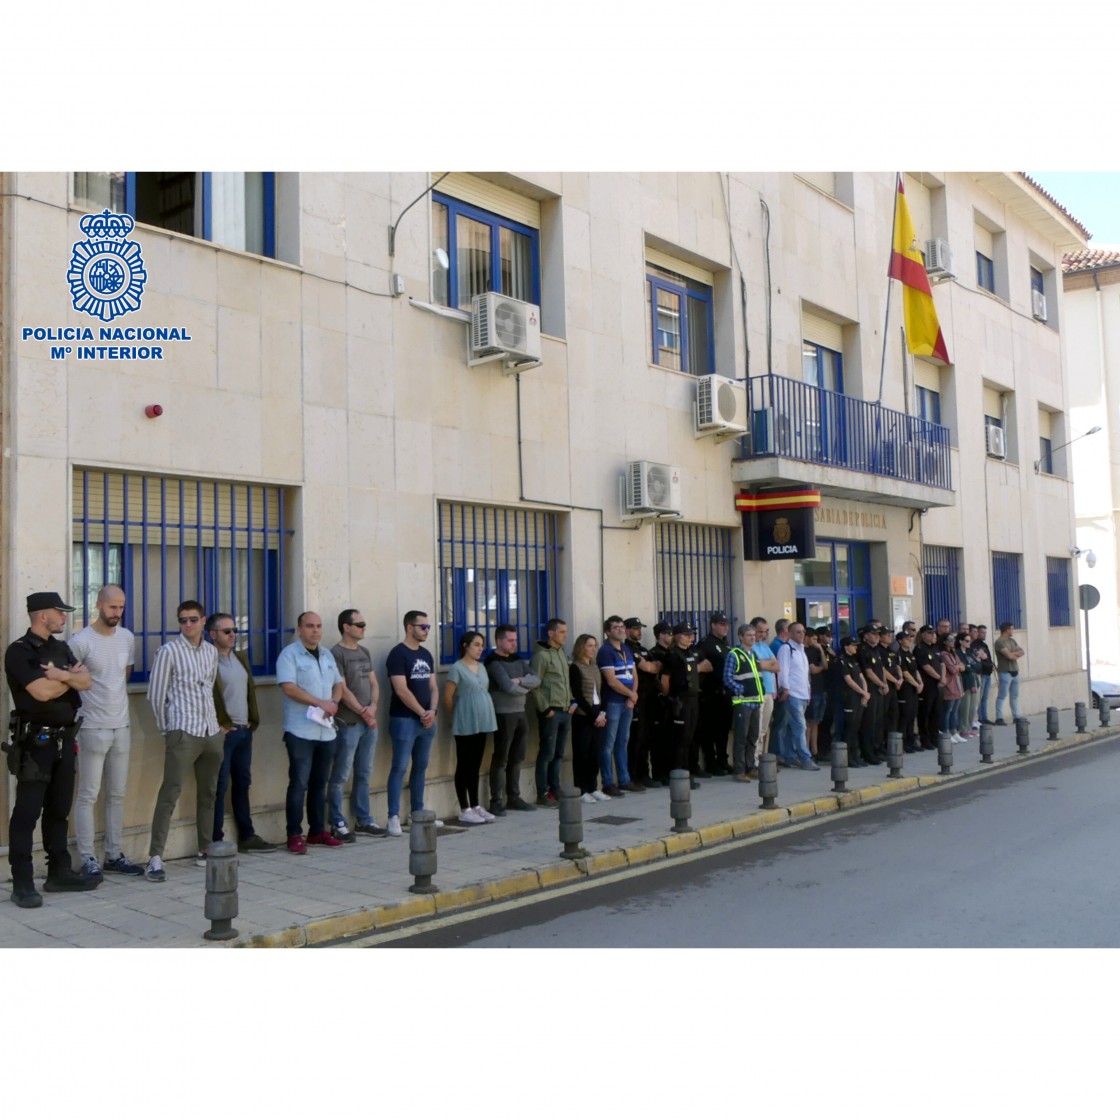 Agentes de la Policía Nacional de Teruel guardan un minuto de silencio en memoria del compañero fallecido en acto de servicio en Andújar